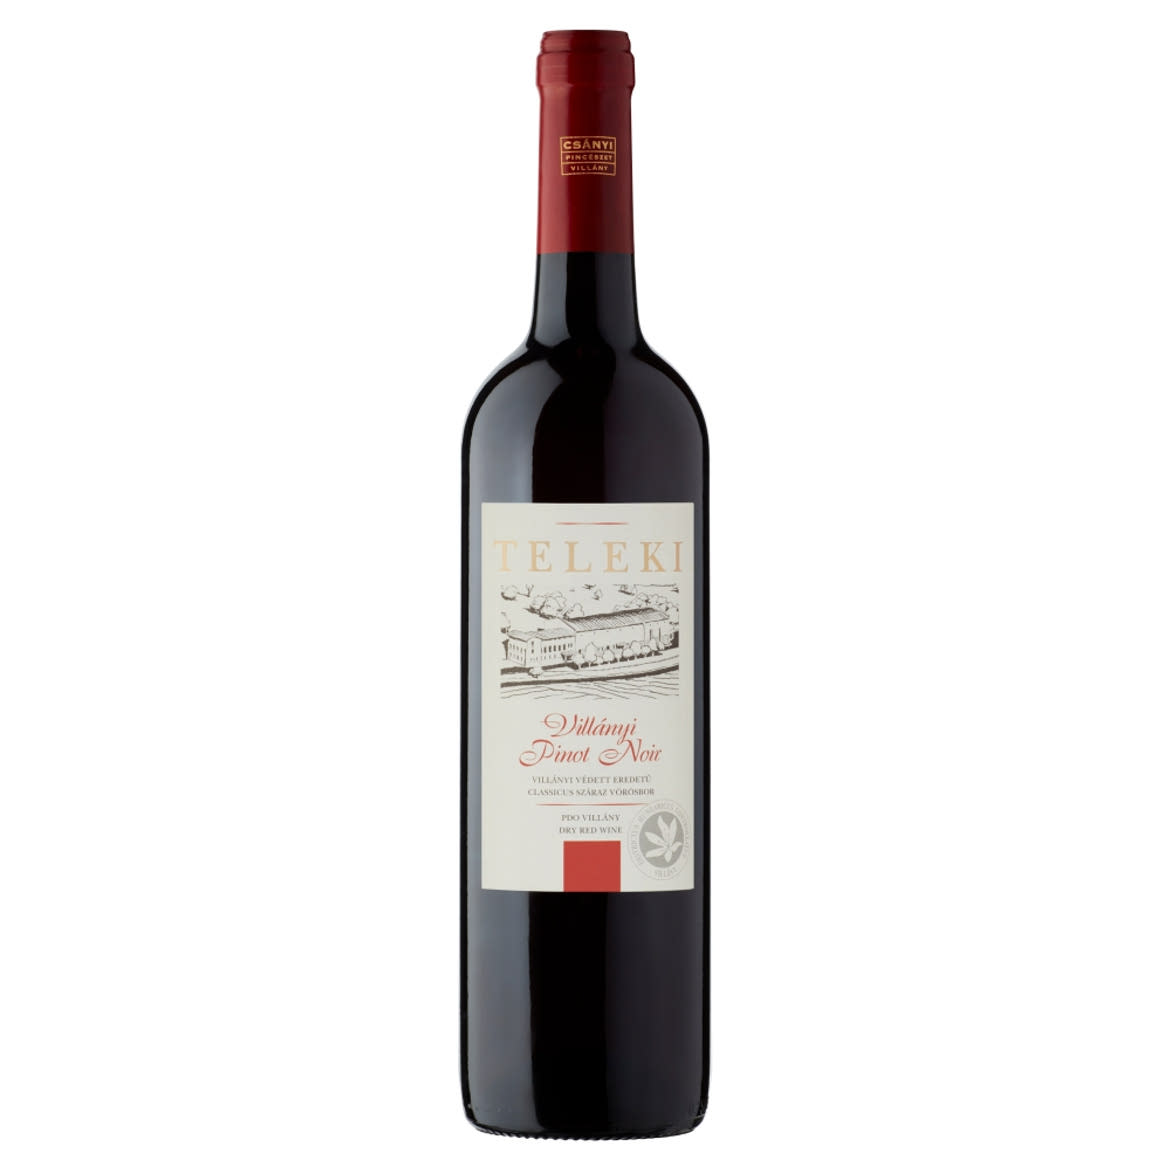 Csányi Pincészet Teleki Villányi Pinot Noir classicus száraz vörösbor 13%